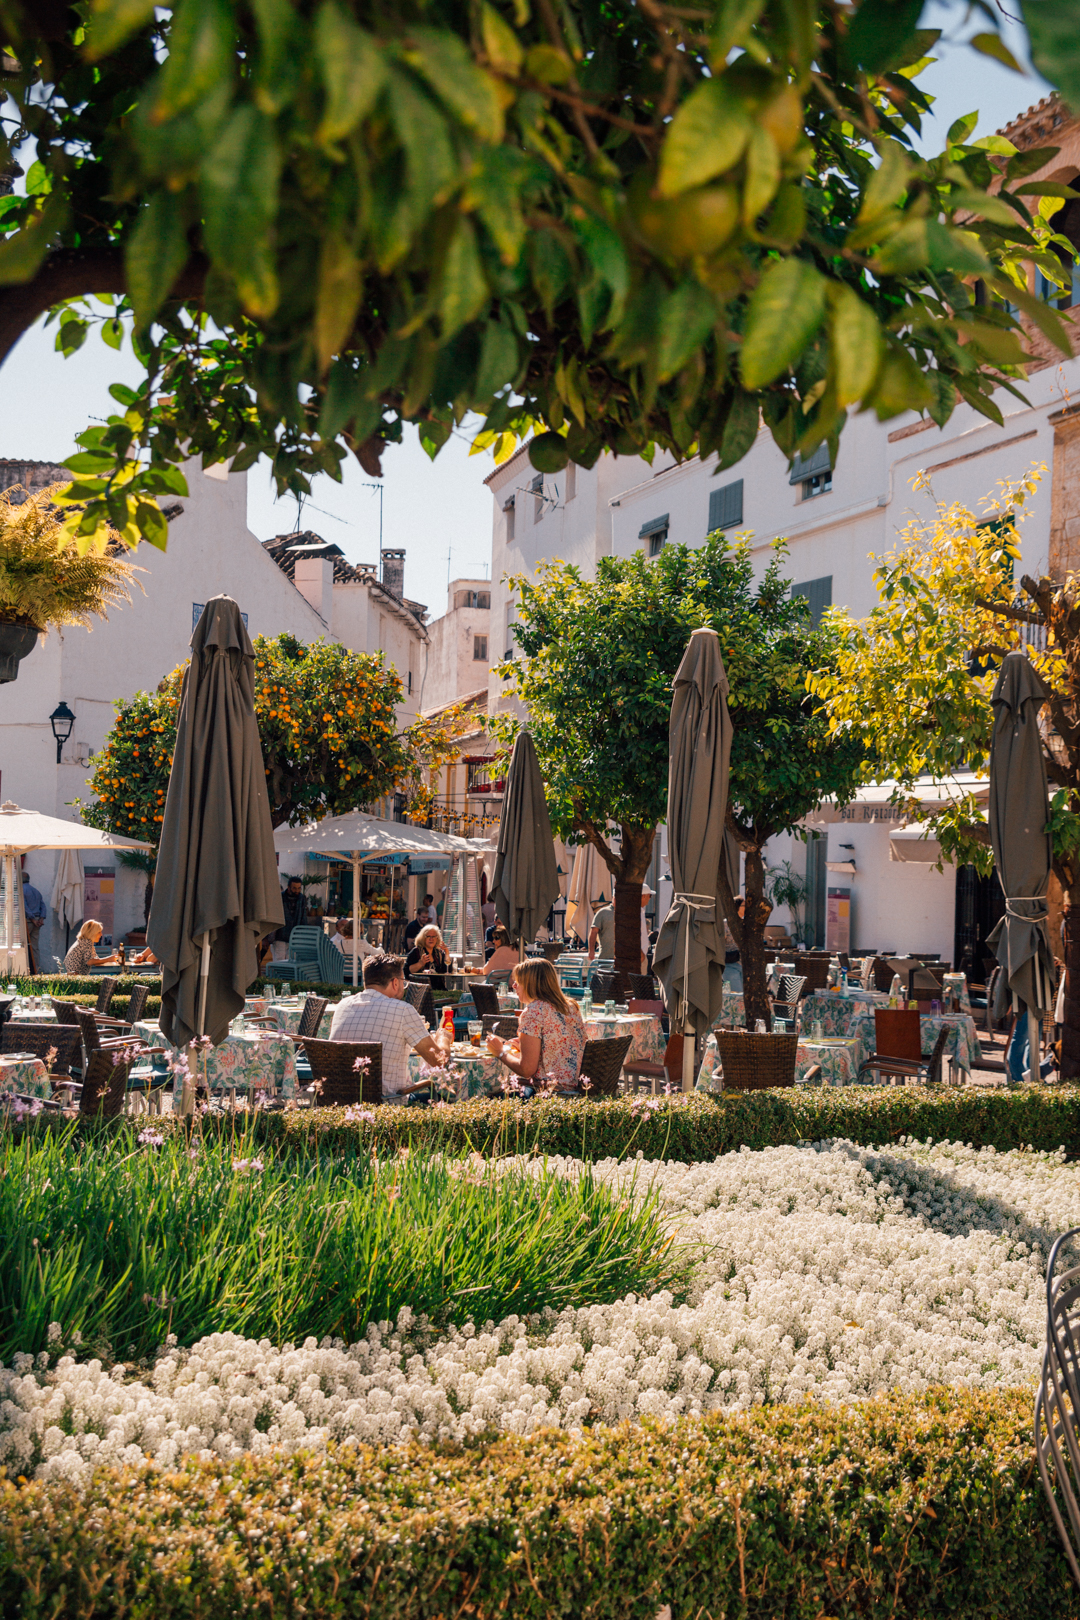 people enjoying lunch at Plaza de los Naranjos, Marbella